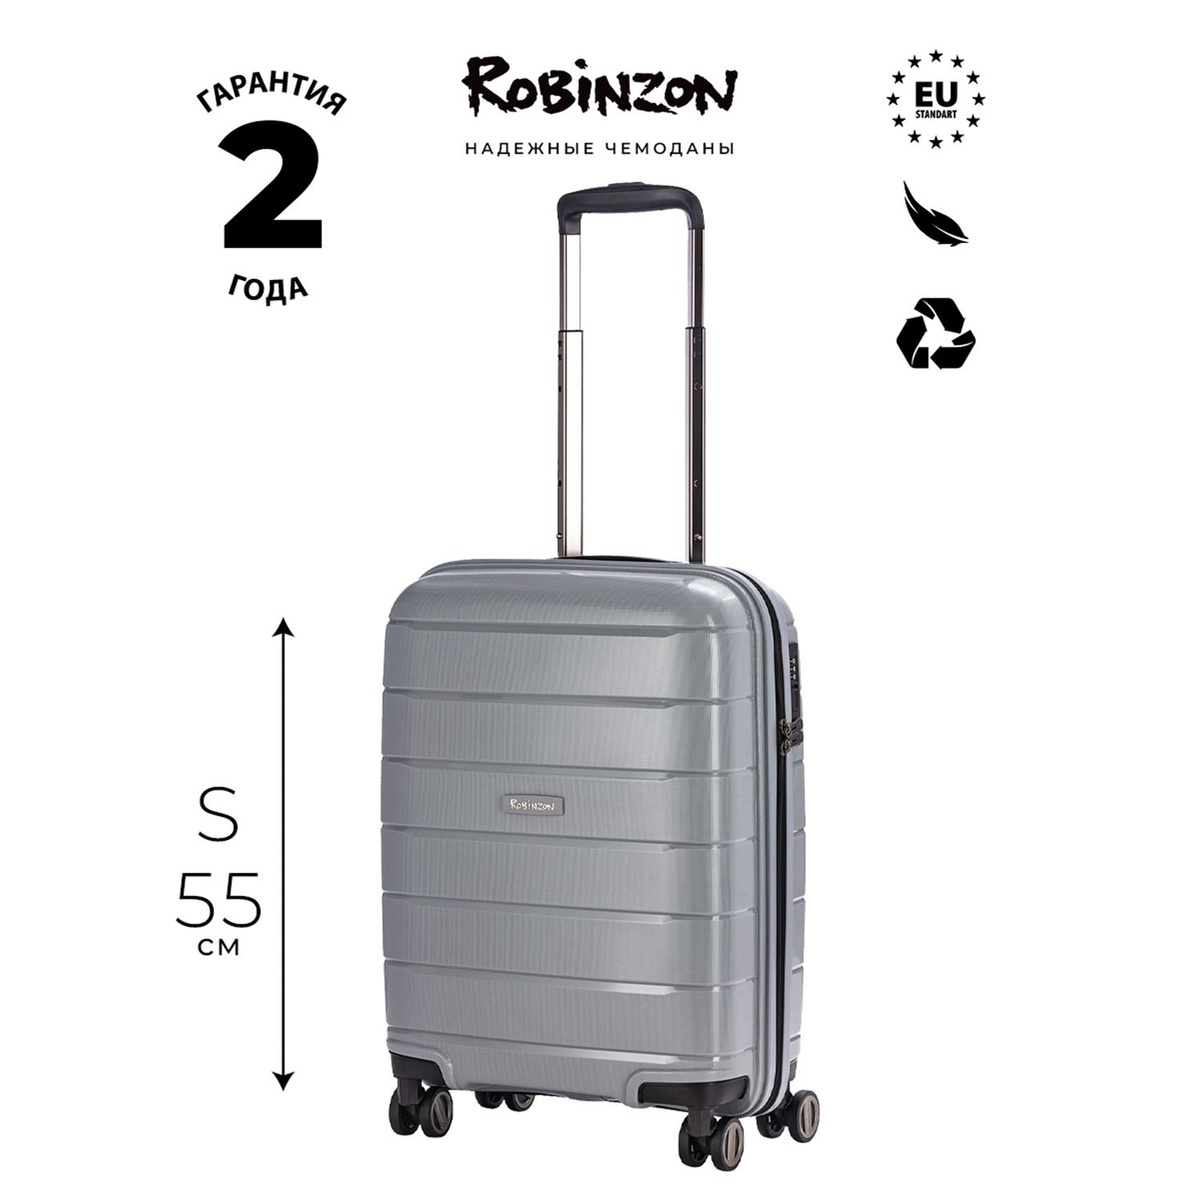 Размер чемодана: 38x55x20 см Вес чемодана: 2,7 кг Объём чемодана: 34 л